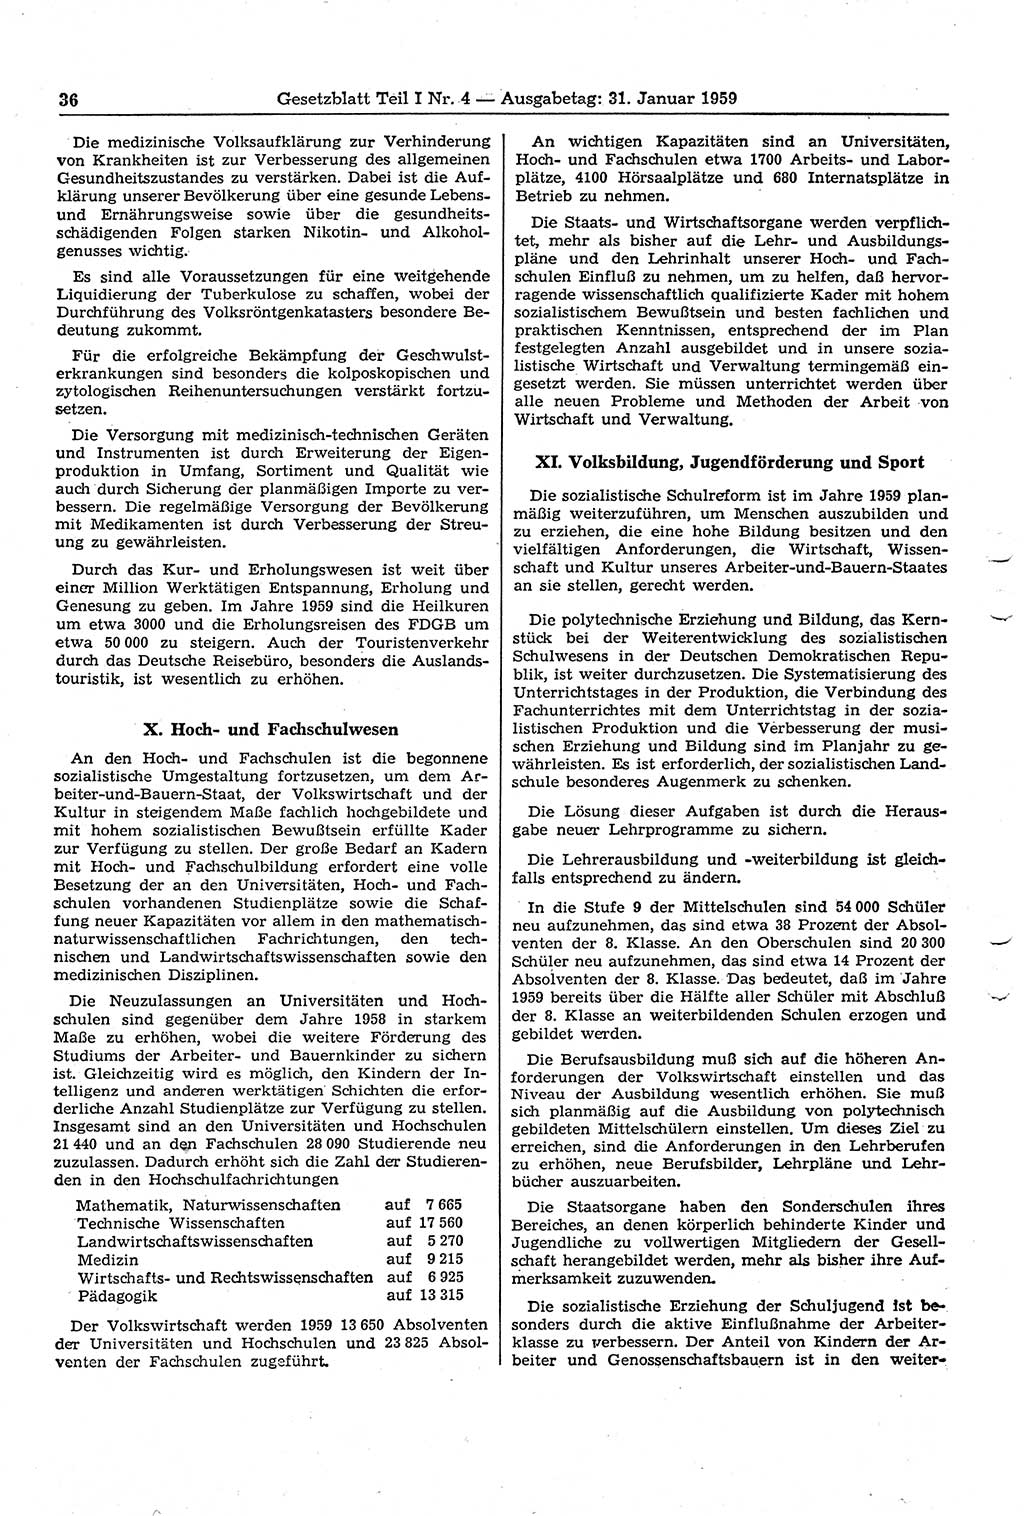 Gesetzblatt (GBl.) der Deutschen Demokratischen Republik (DDR) Teil Ⅰ 1959, Seite 36 (GBl. DDR Ⅰ 1959, S. 36)